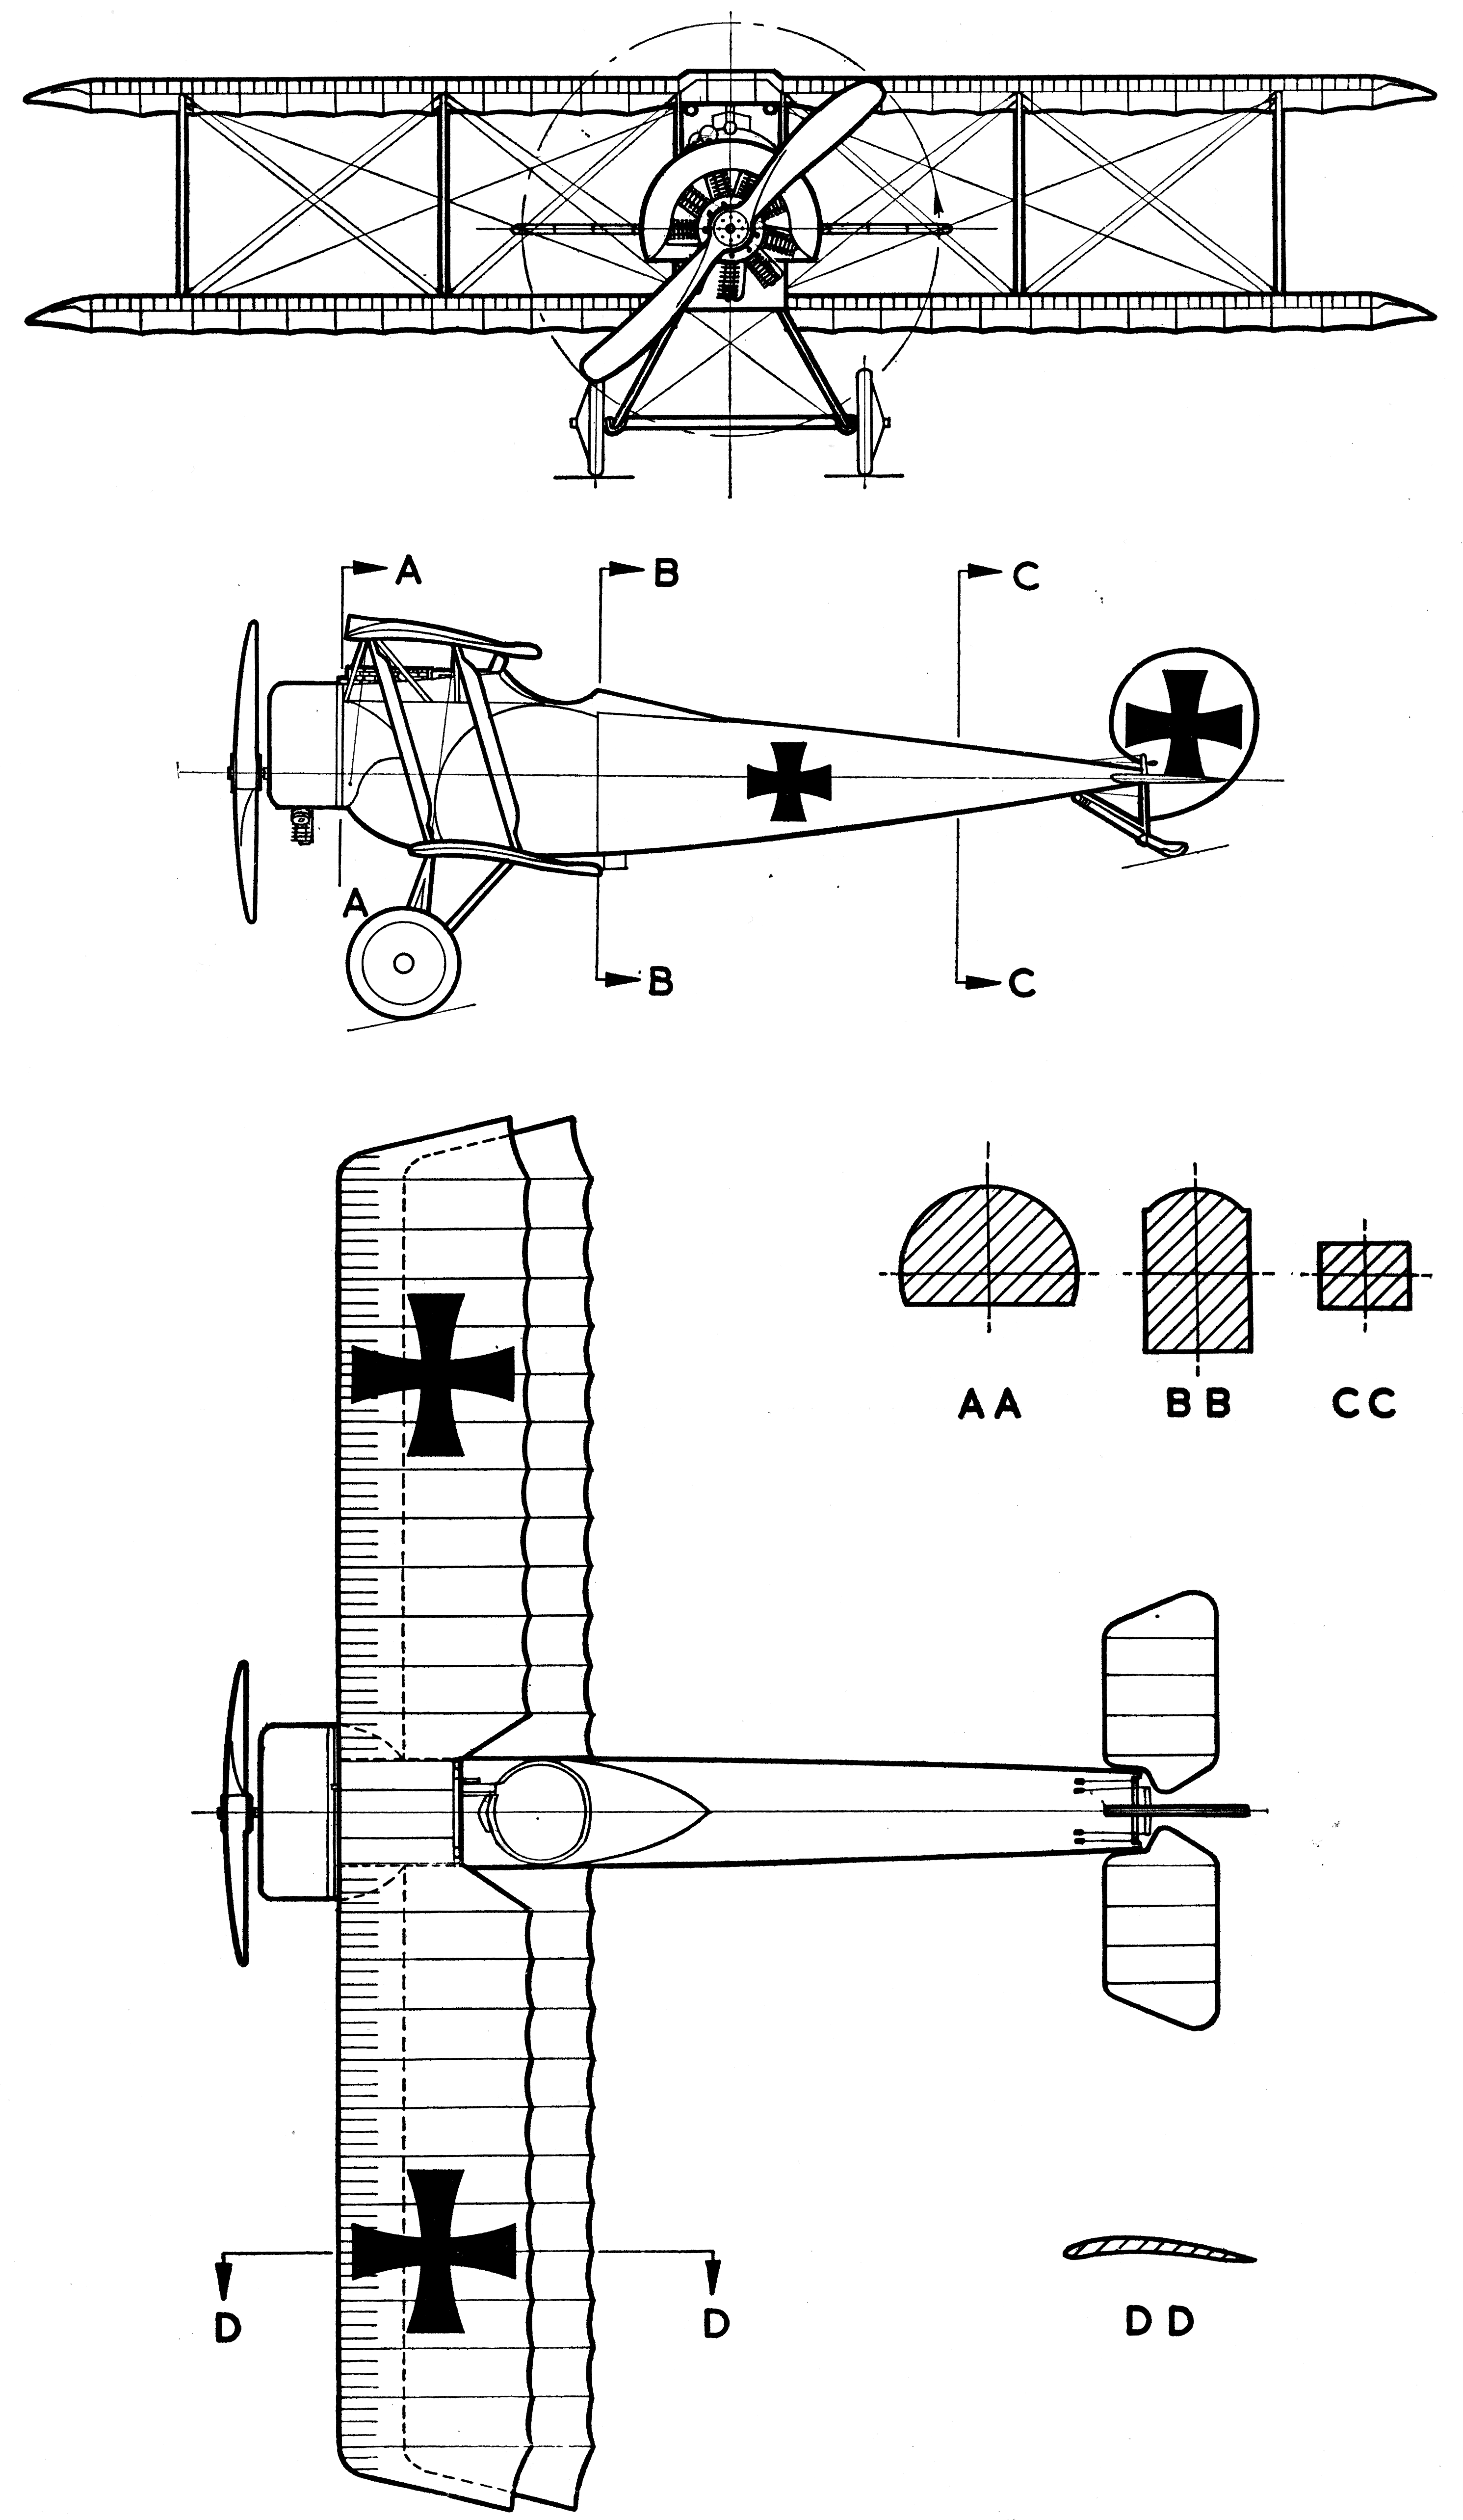 Fokker D.II blueprint